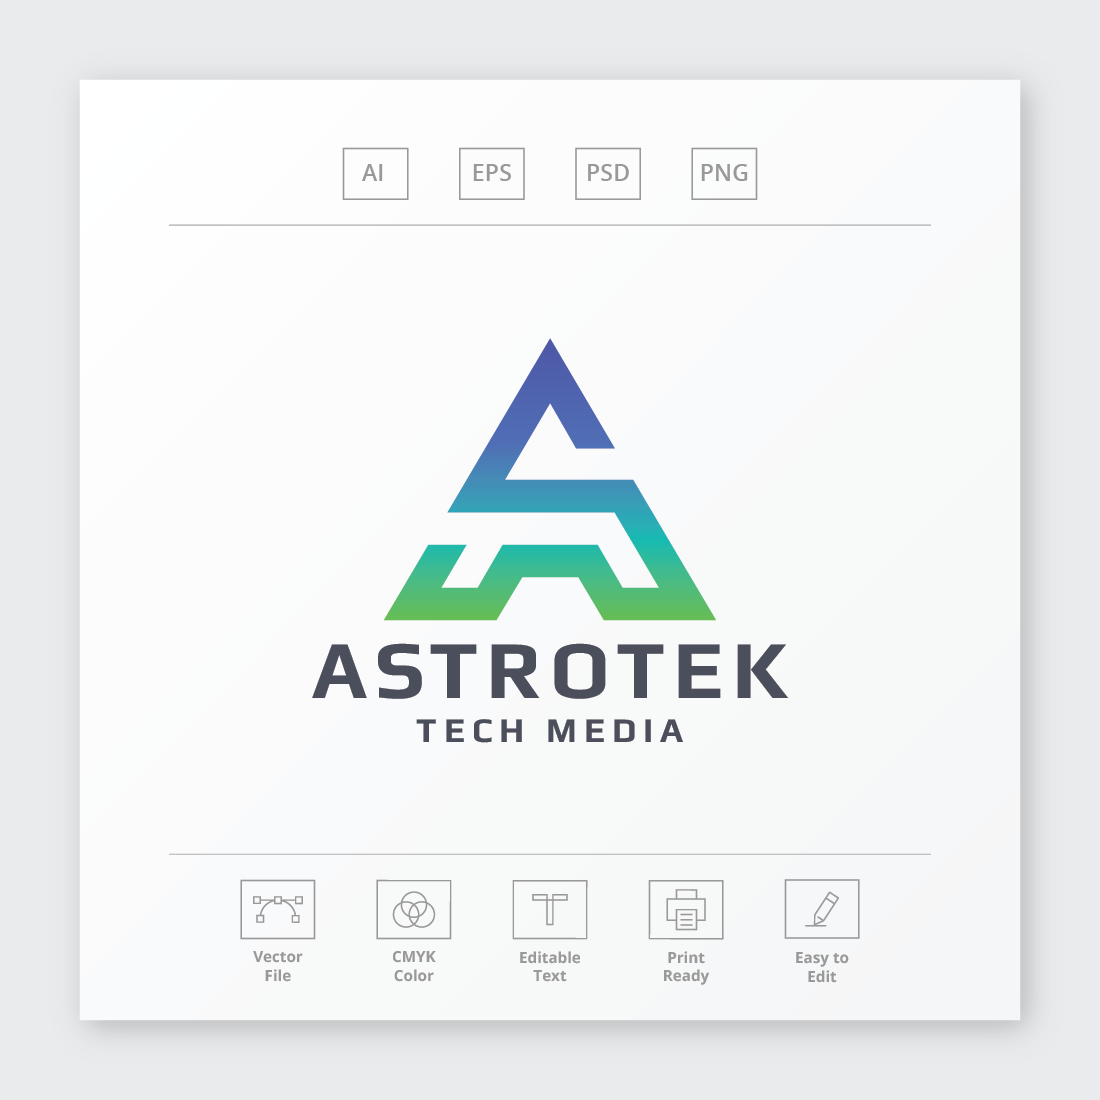 Astrotek Letter A Logo preview image.